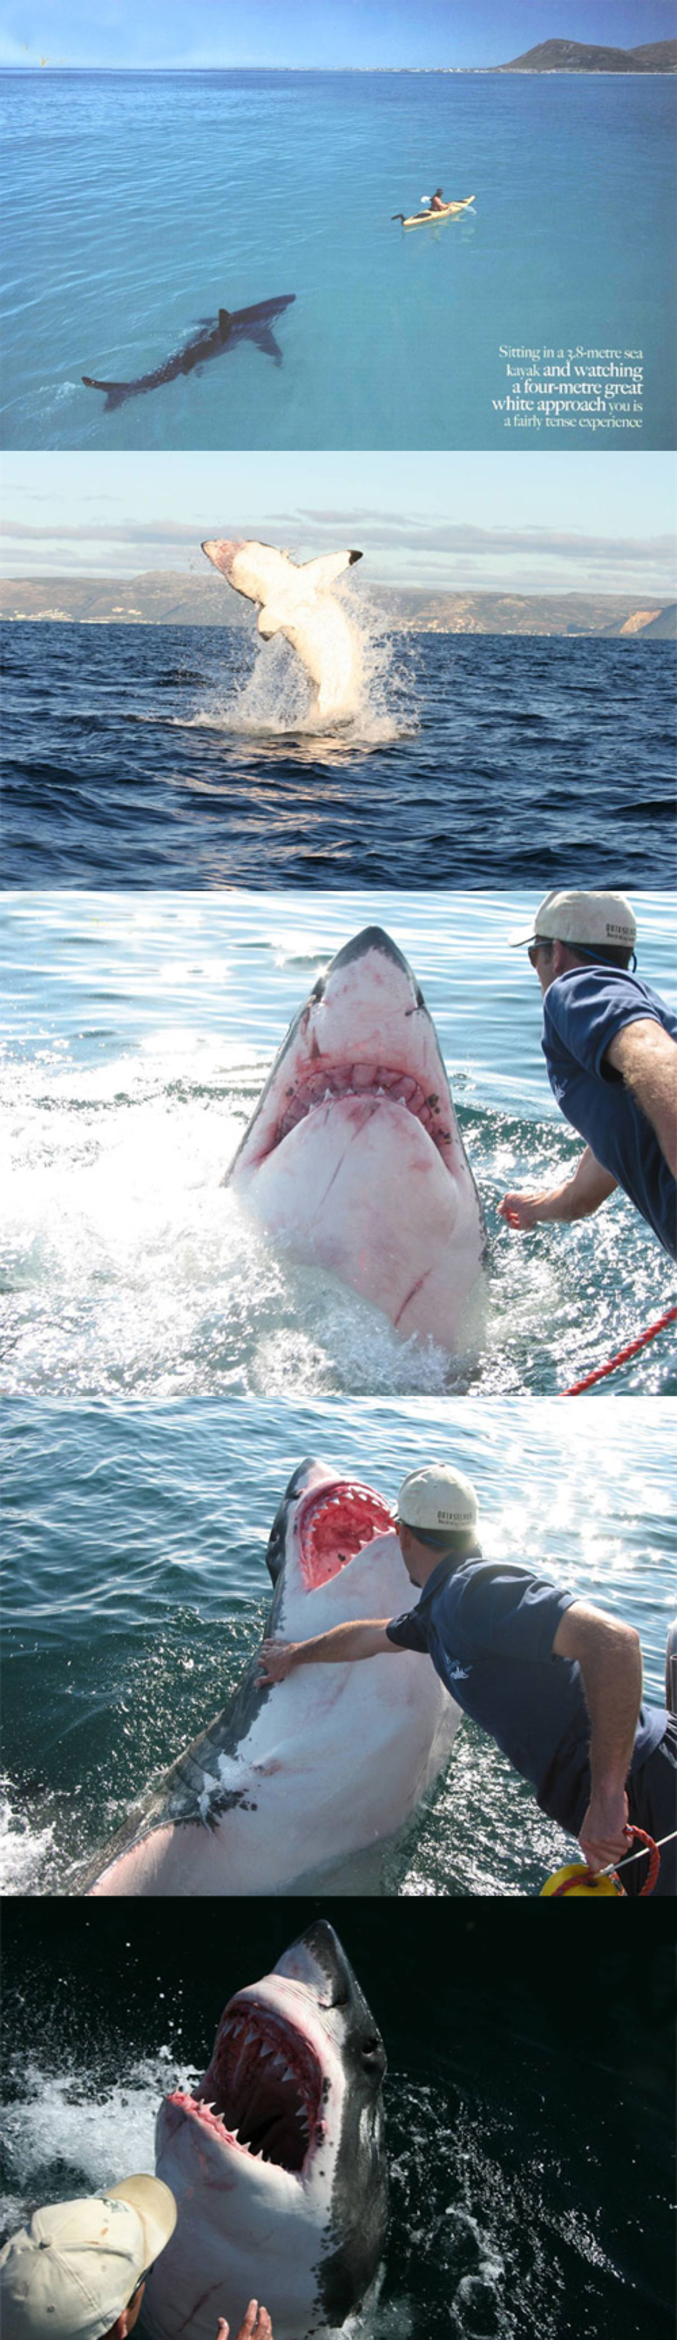 Un requin blanc se laisse approcher par un homme.